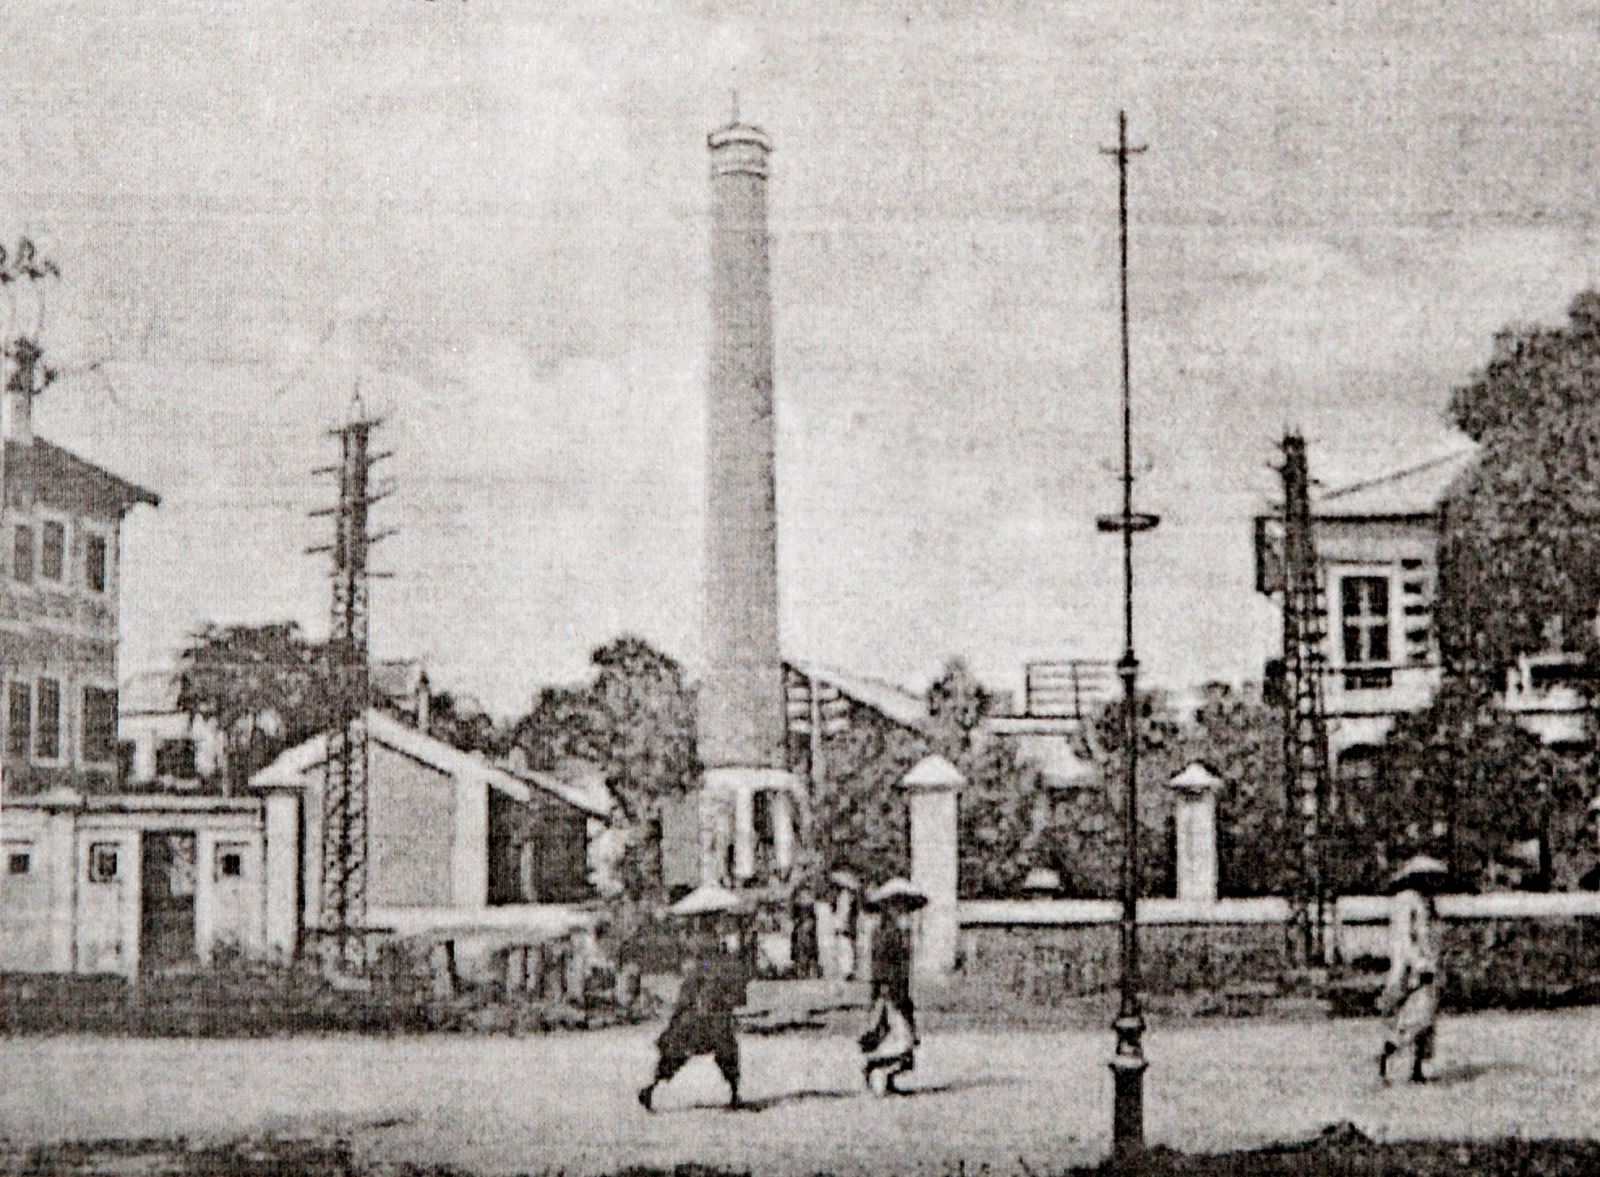 Nhà máy đèn Bờ Hồ tại phố Frăng-xi-Gác-ni-ê bên cạnh hồ Hoàn Kiếm (nay là phố Đinh Tiên Hoàng).